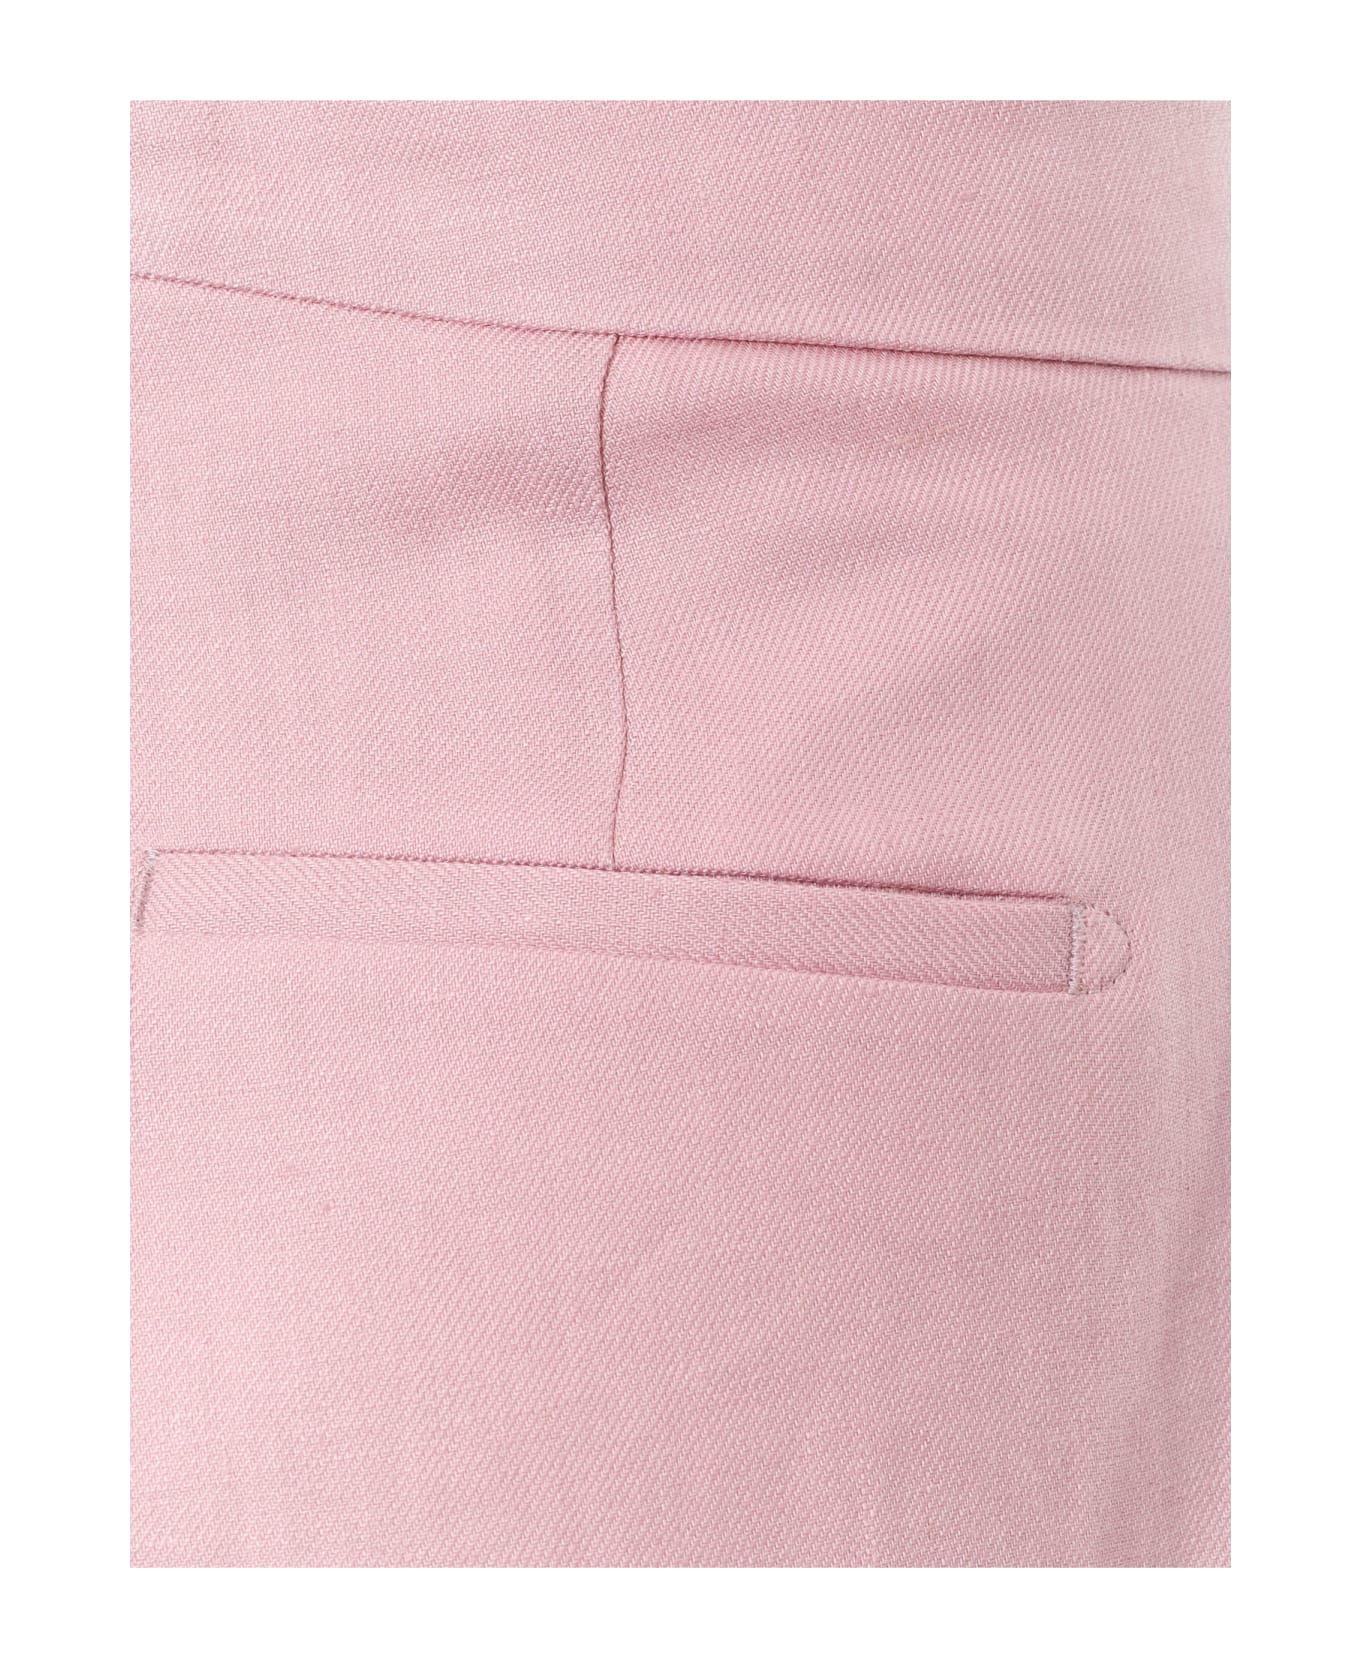 Tagliatore Trouser - Pink